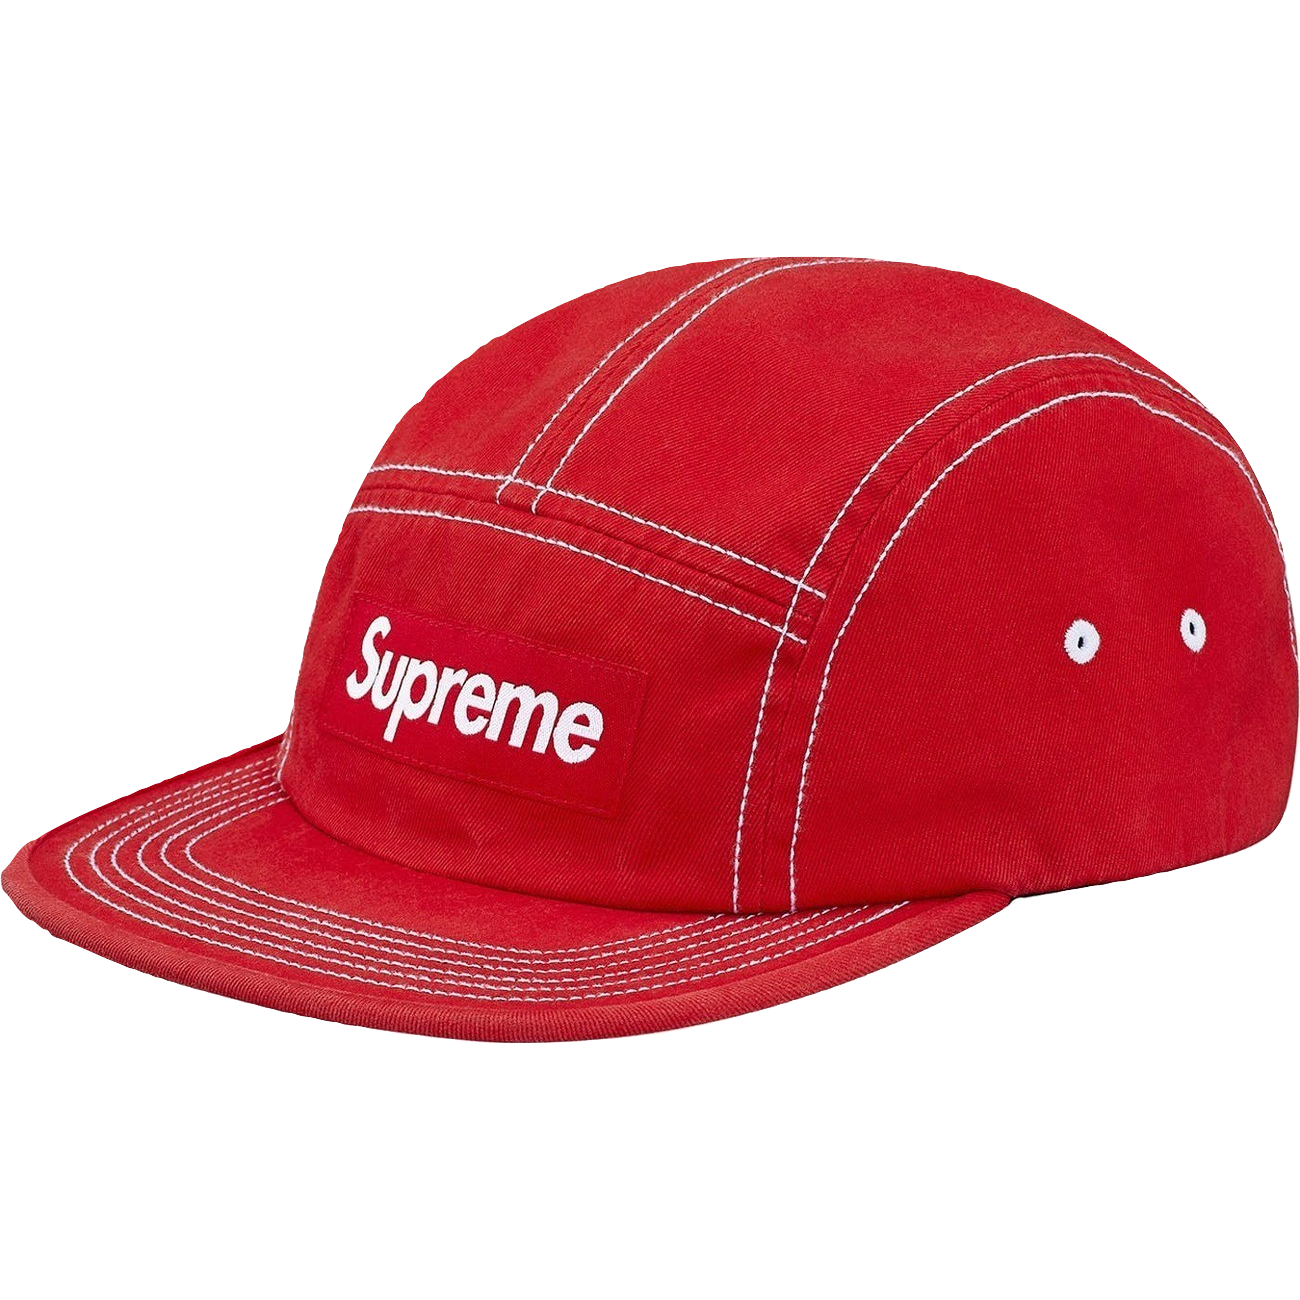 Supreme Contrast Stitch Camp Cap - Red